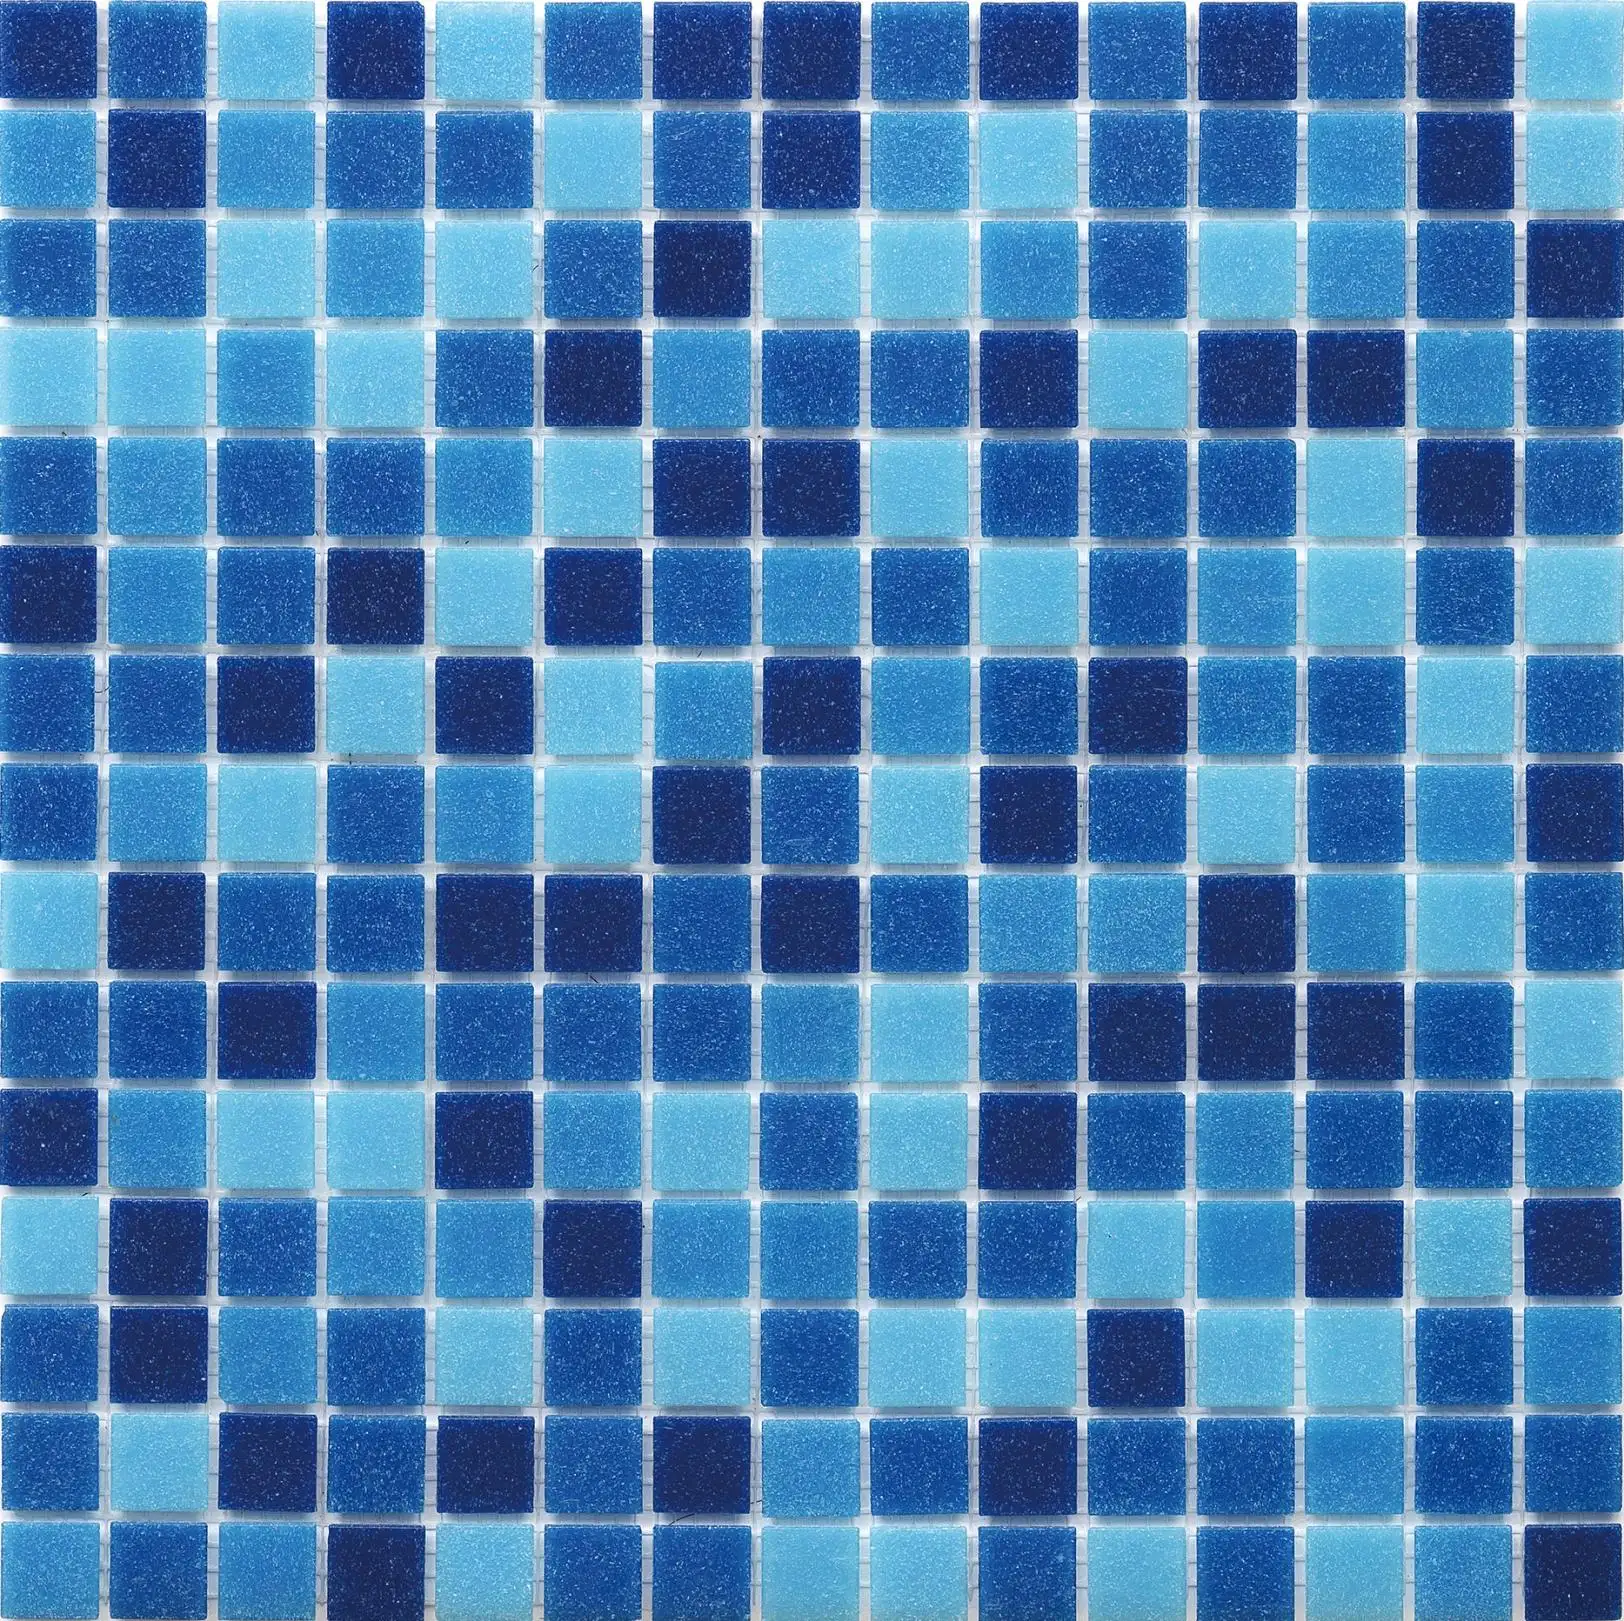 Foshan 327x327mm populaire mosaïque thermofusible carreaux couleur bleue pour piscine salle de bain utilisation extérieure décoration murale en gros